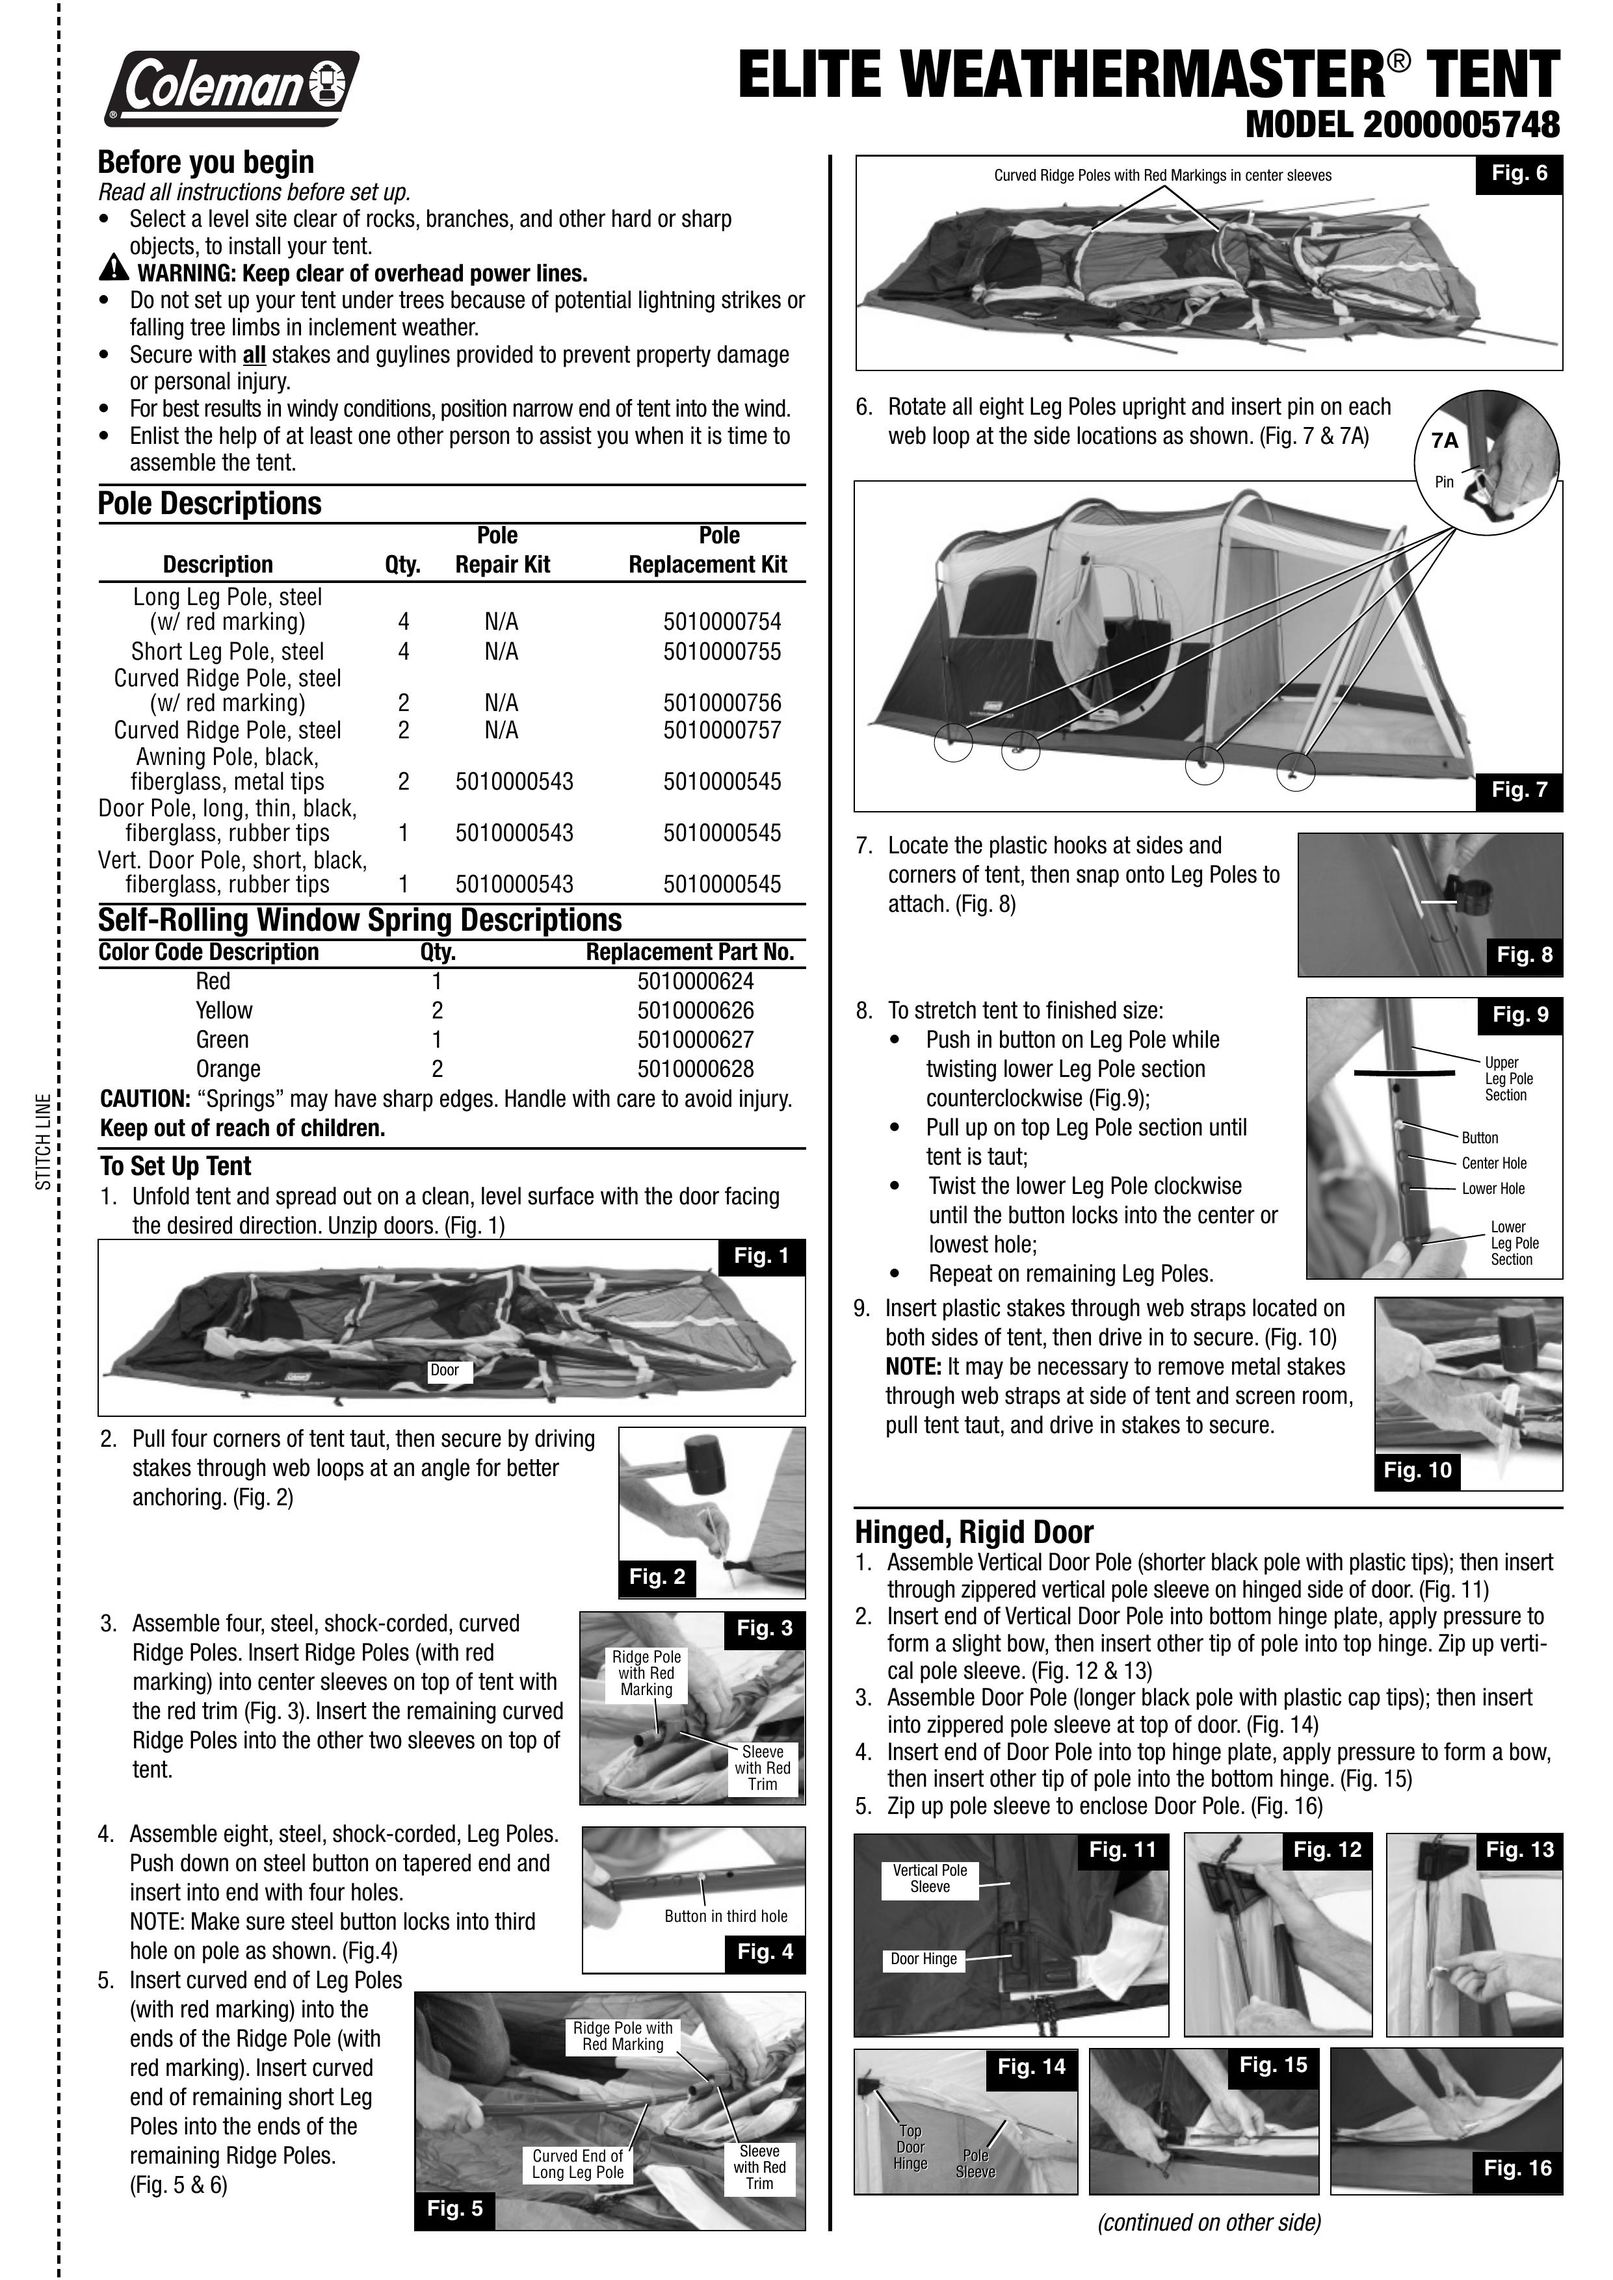 Coleman 2000005748 Tent User Manual